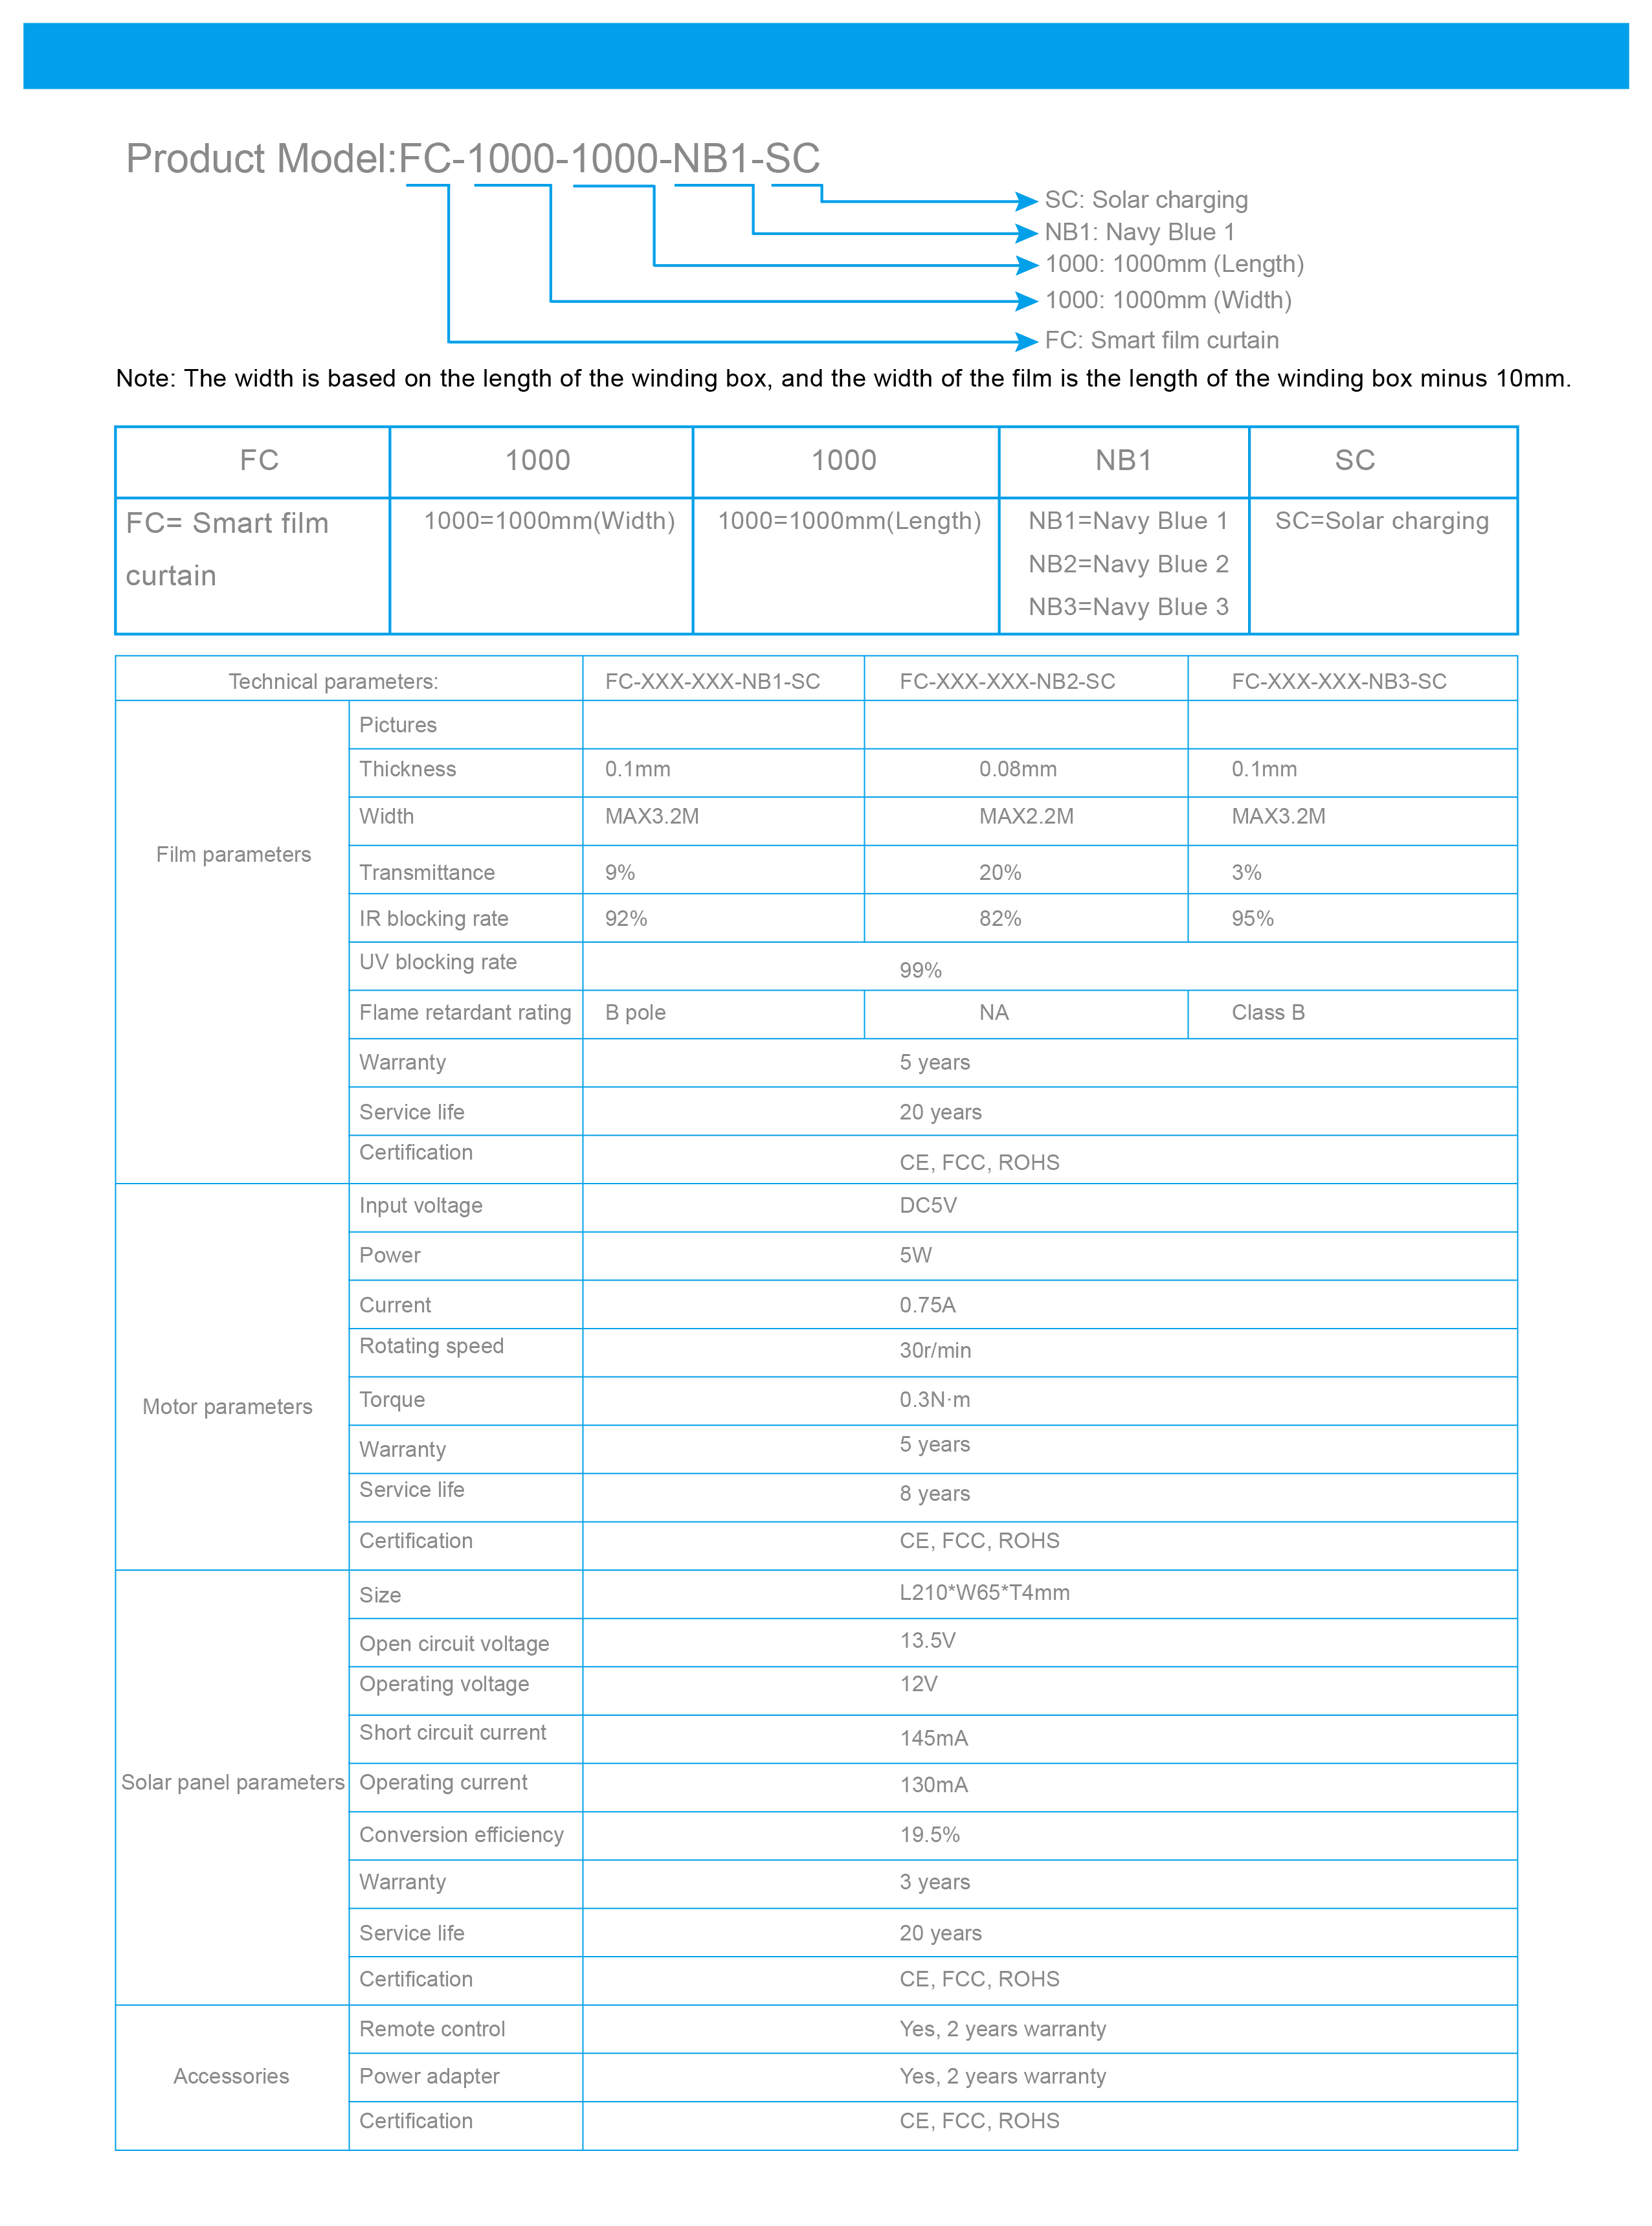 Filmbase Product data sheet